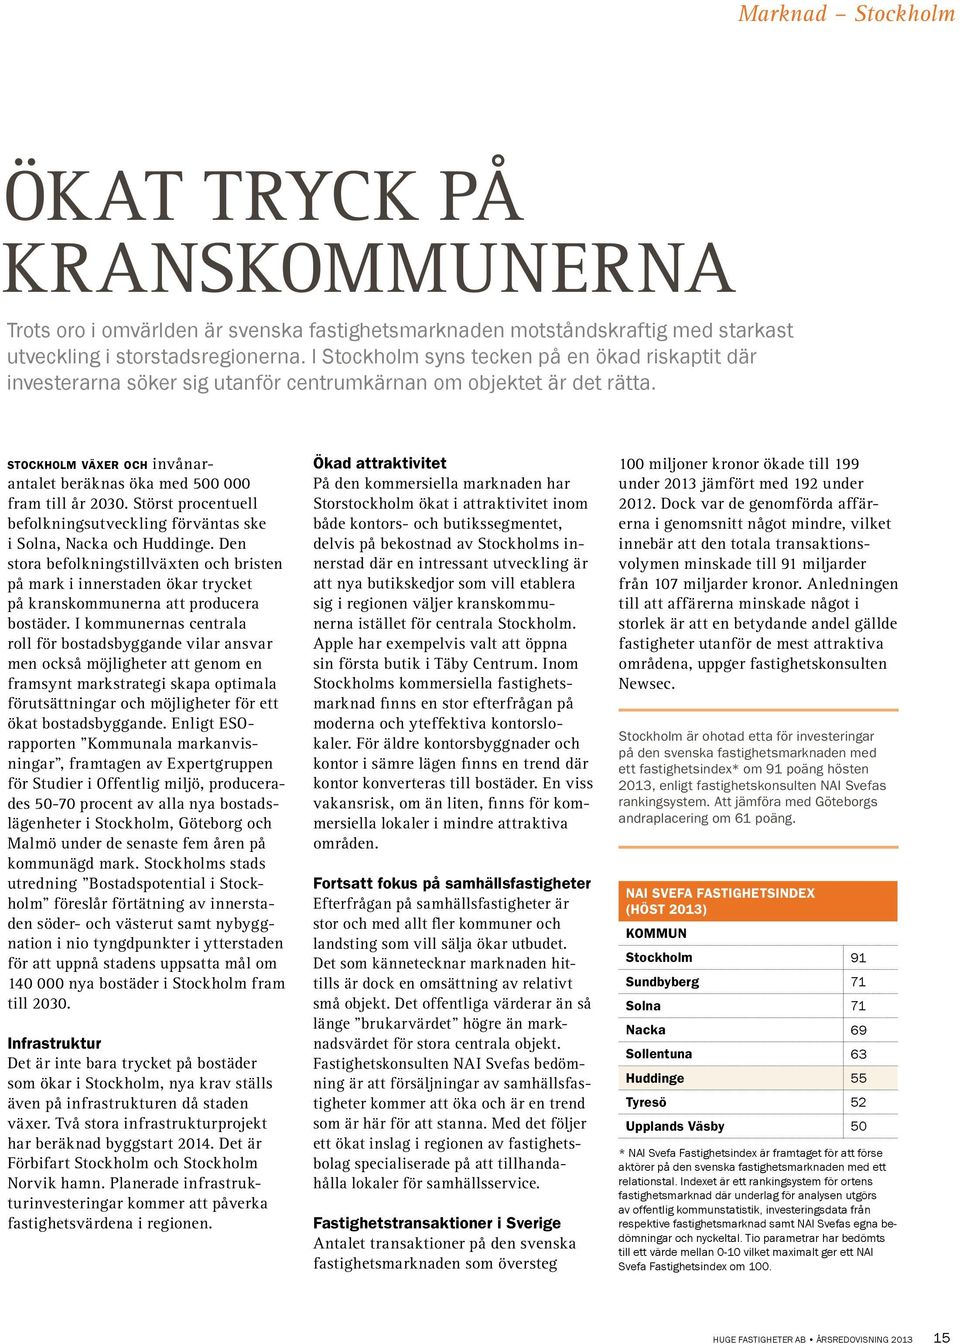 Störst procentuell befolknings utveckling förväntas ske i Solna, Nacka och Huddinge.